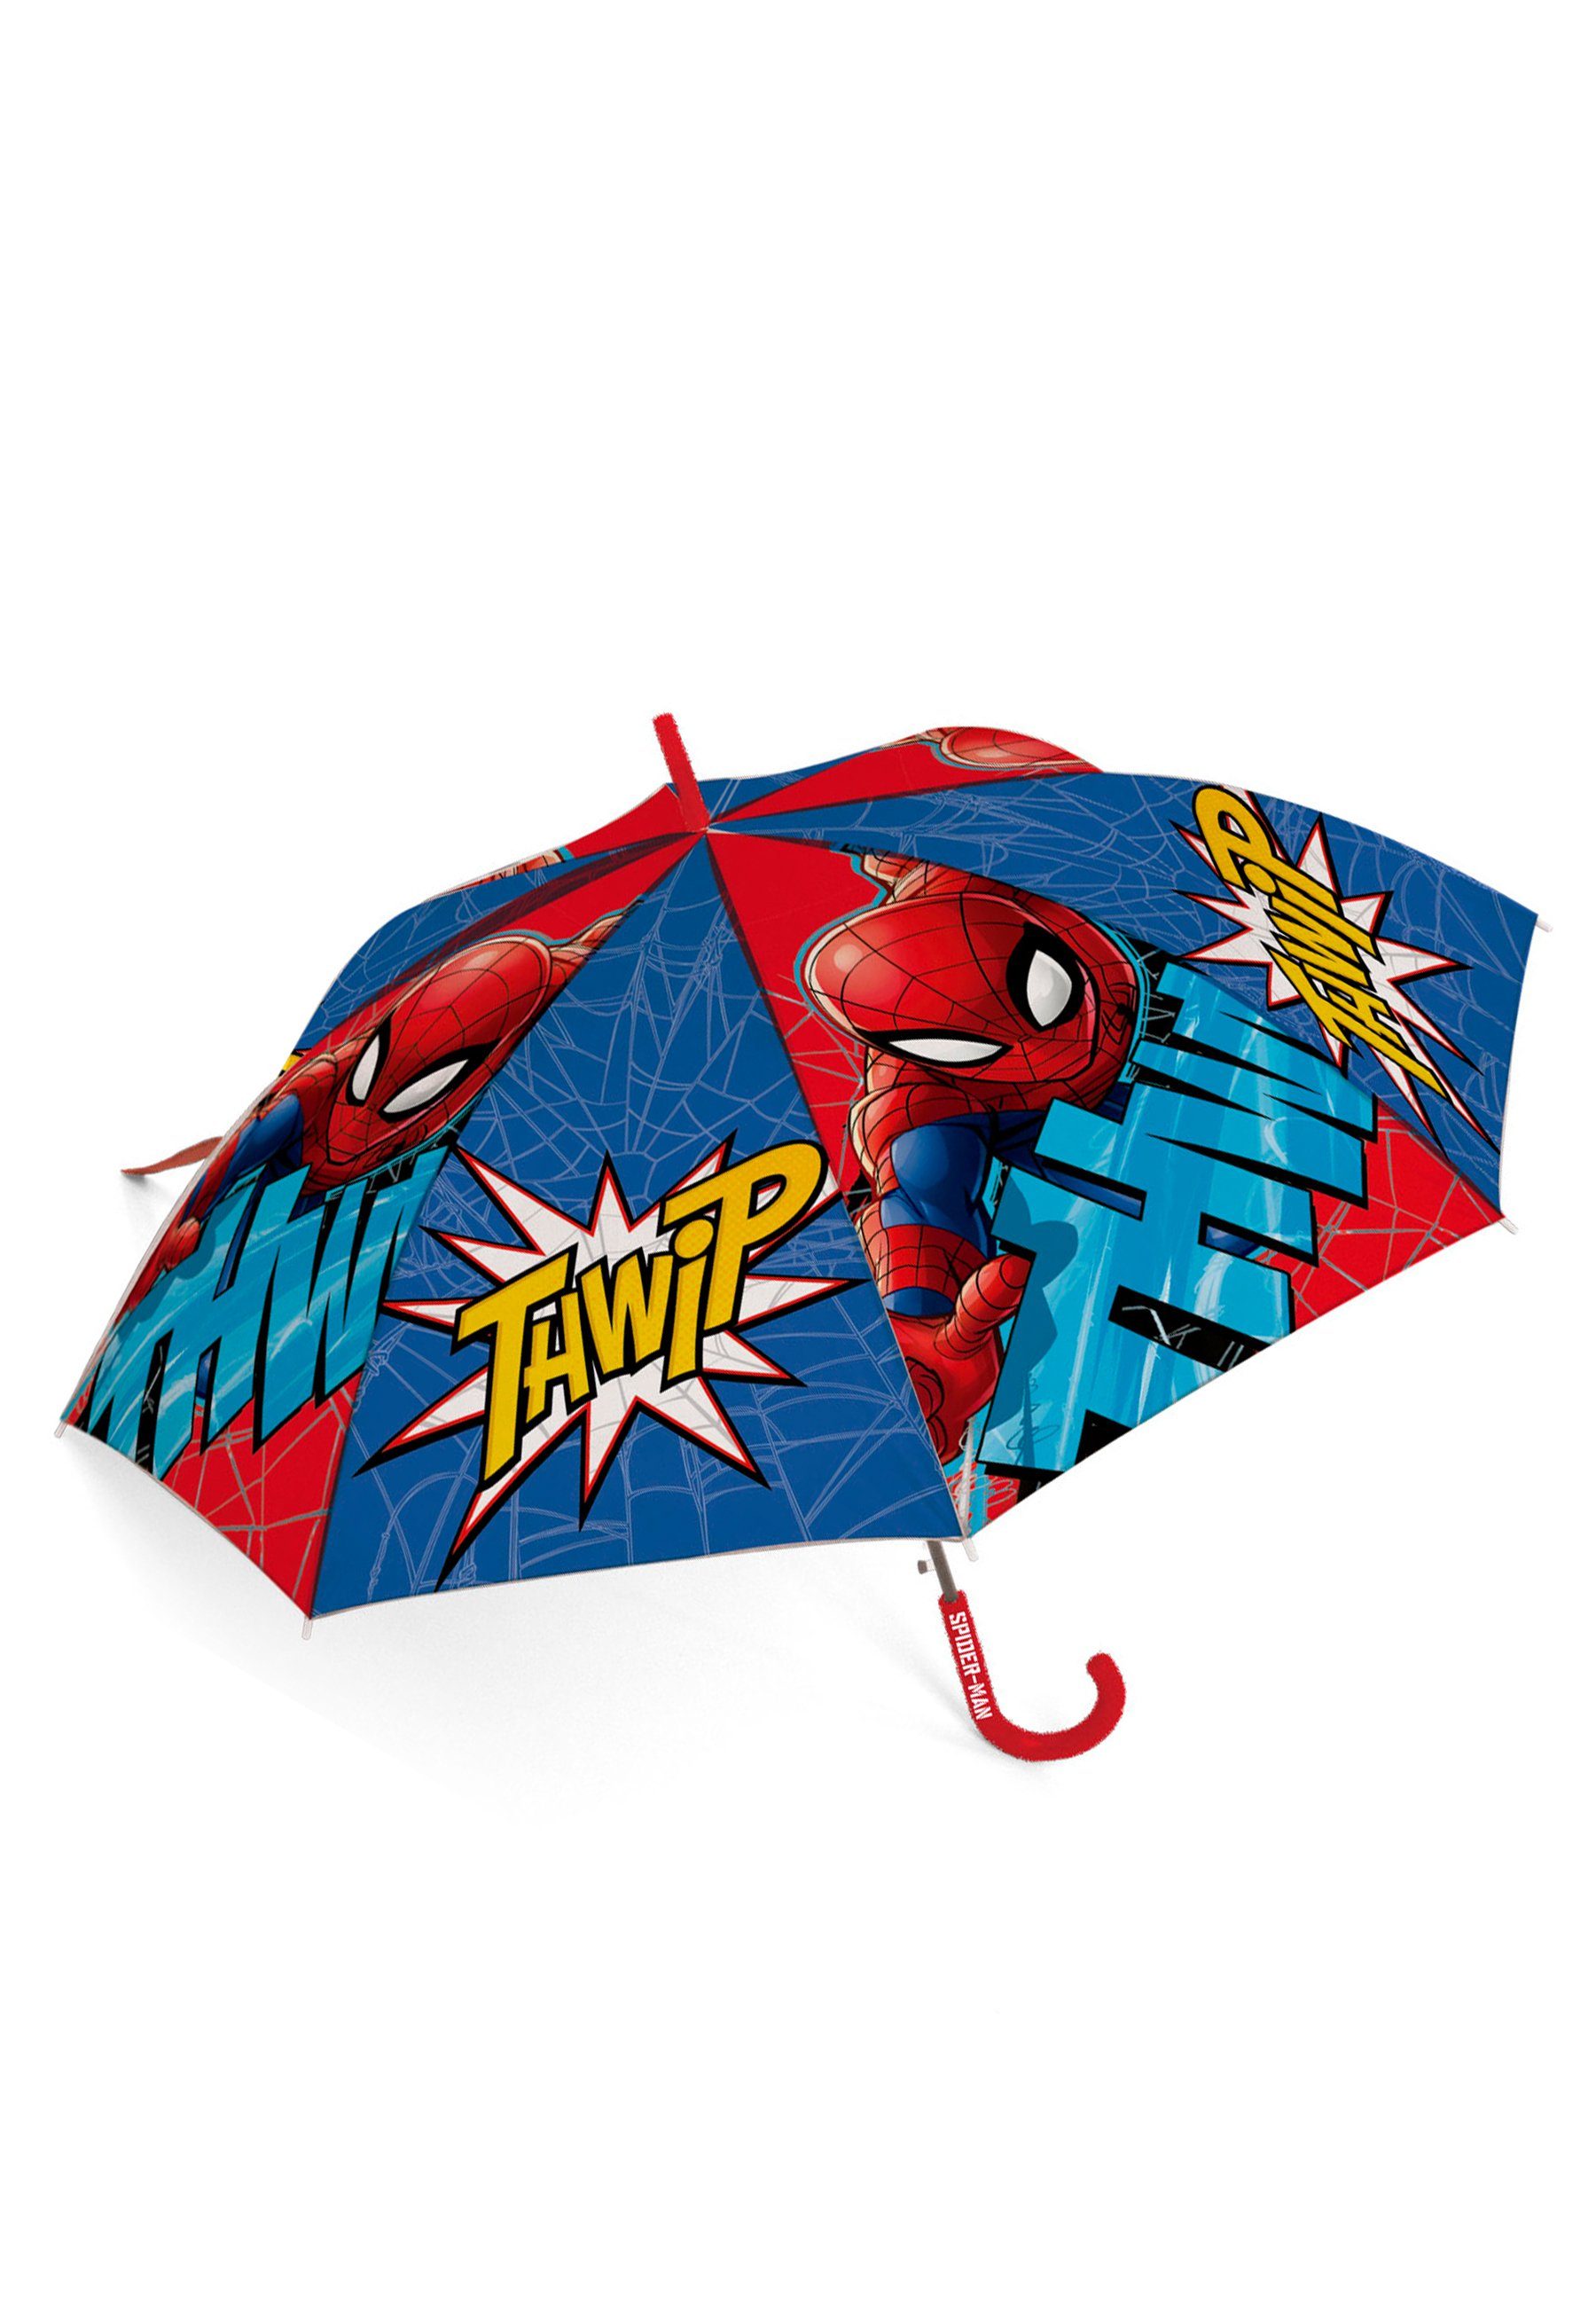 Stock-Schirm Kuppelschirm Regenschirm Stockregenschirm Kinder Spiderman